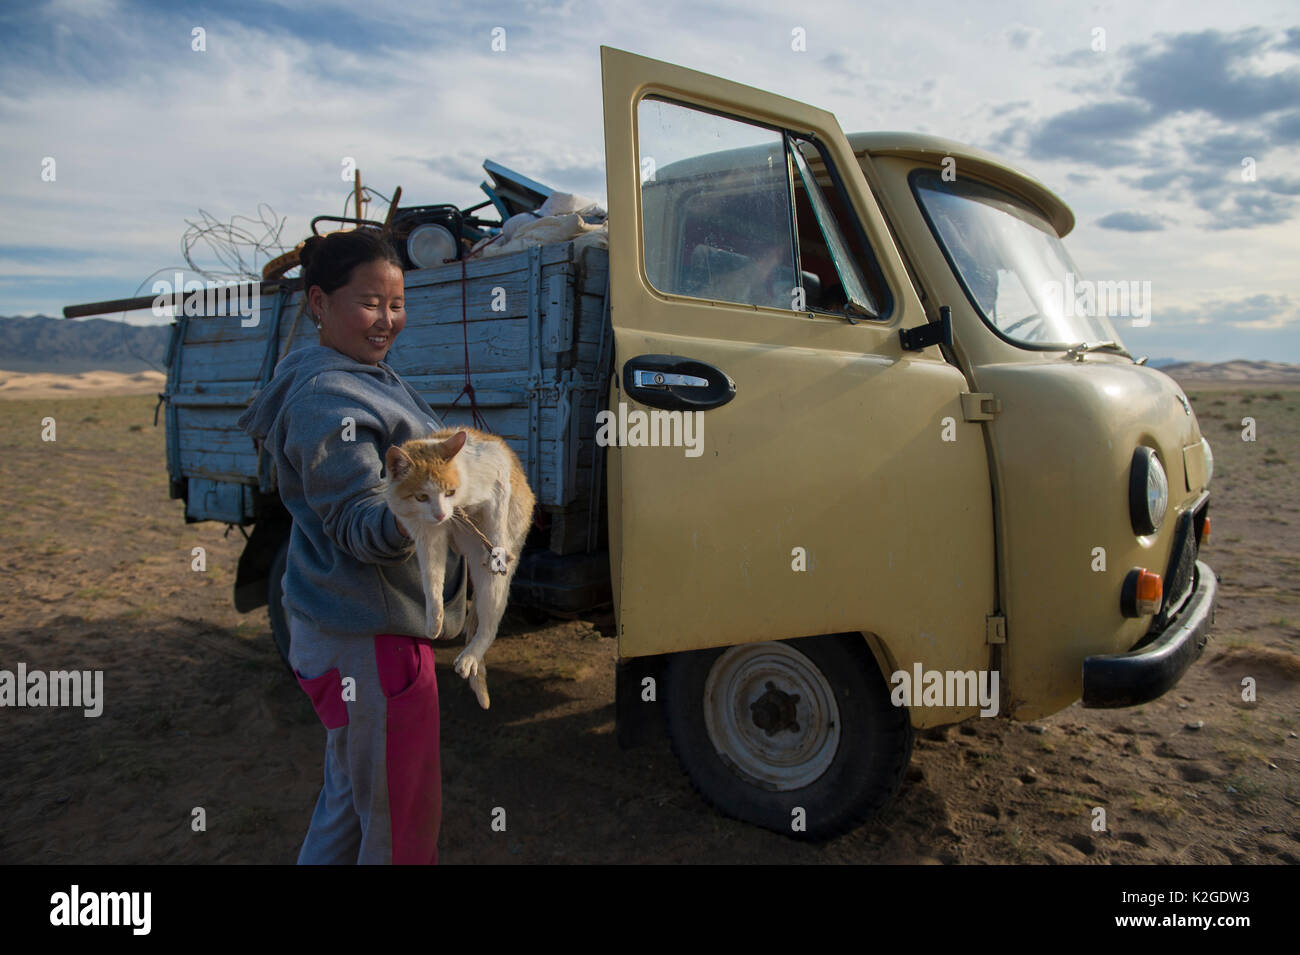 Famille nomade déménagement à summer place, chargement chat dans van, dunes de sable Khongor, Govi Gurvan Saikhan Parc National, désert de Gobi, la Mongolie du Sud. Juin 2015. Banque D'Images